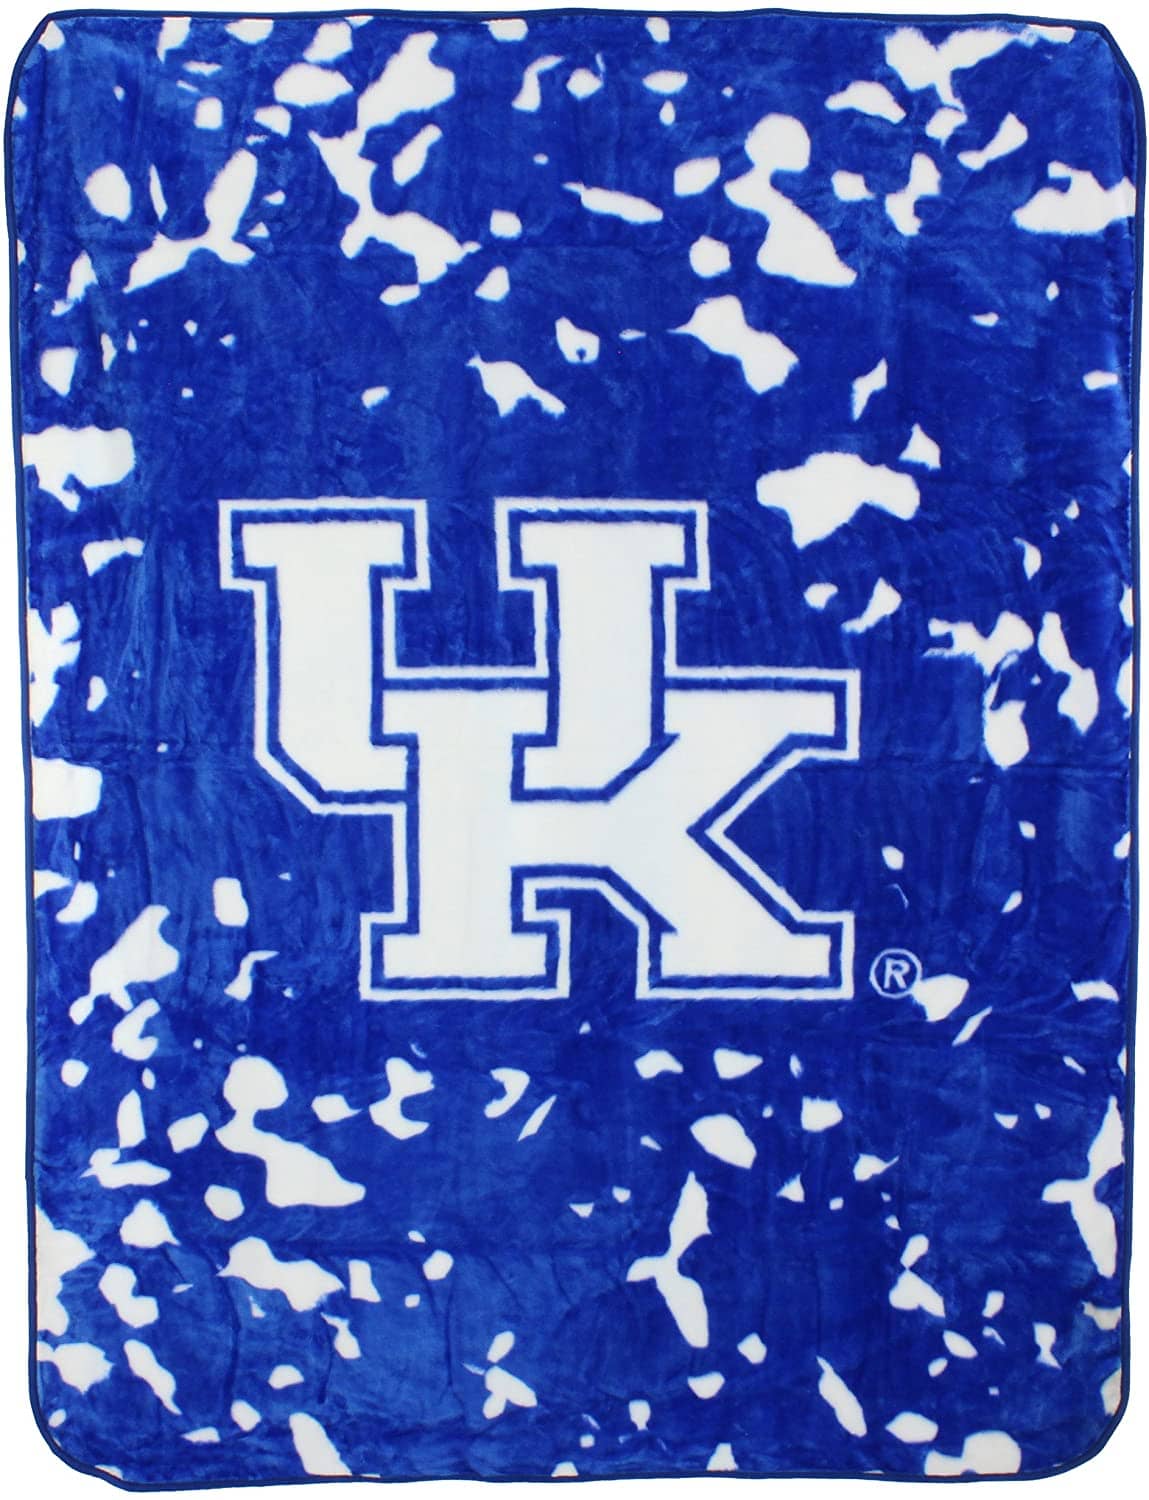 Ncaa Throw Blanket Kentucky Wildcats Fleece Blanket